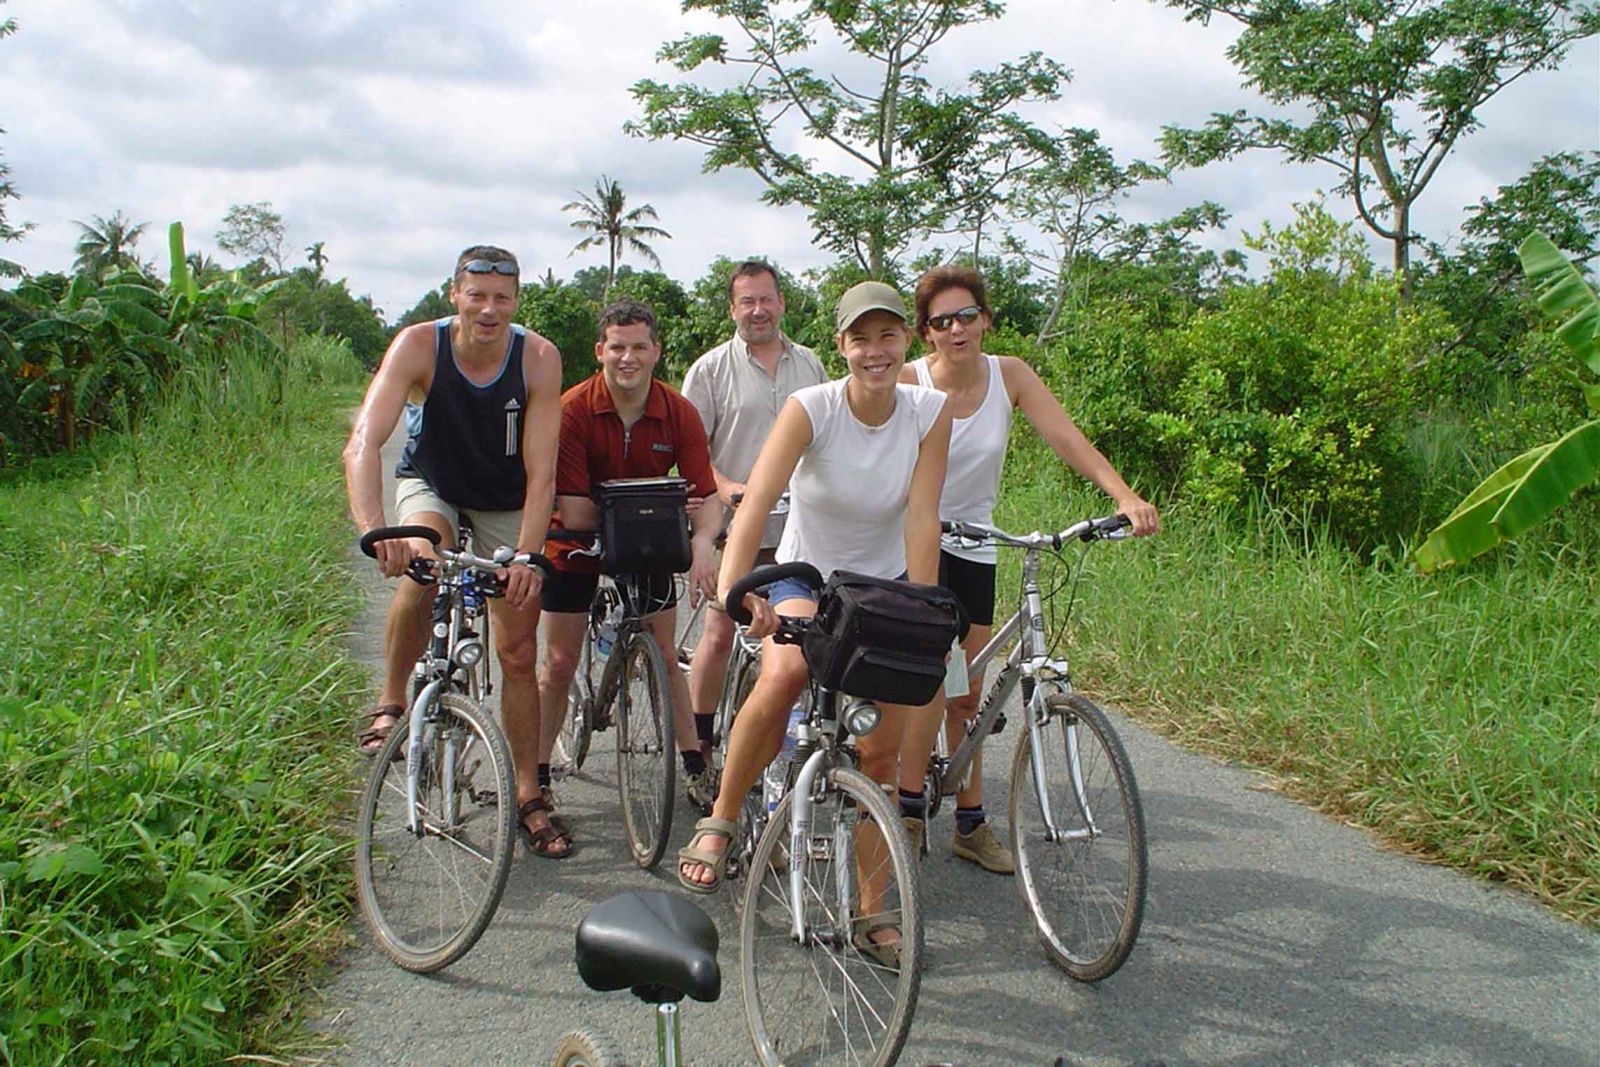 Ride a bike around peaceful village